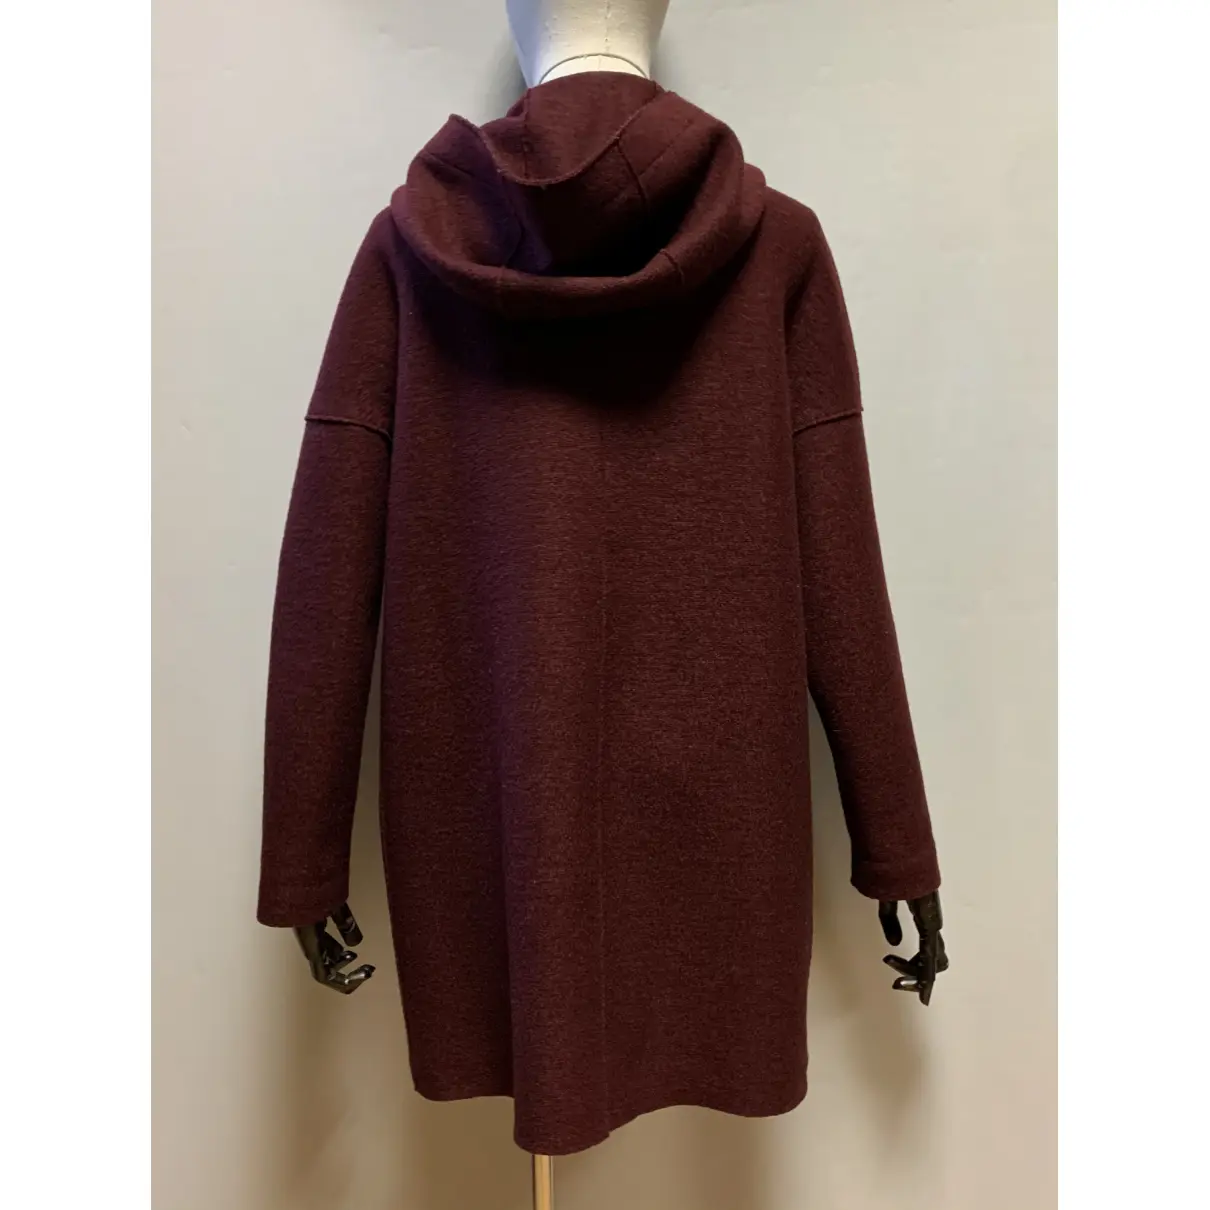 Buy Harris Wharf London Wool coat online